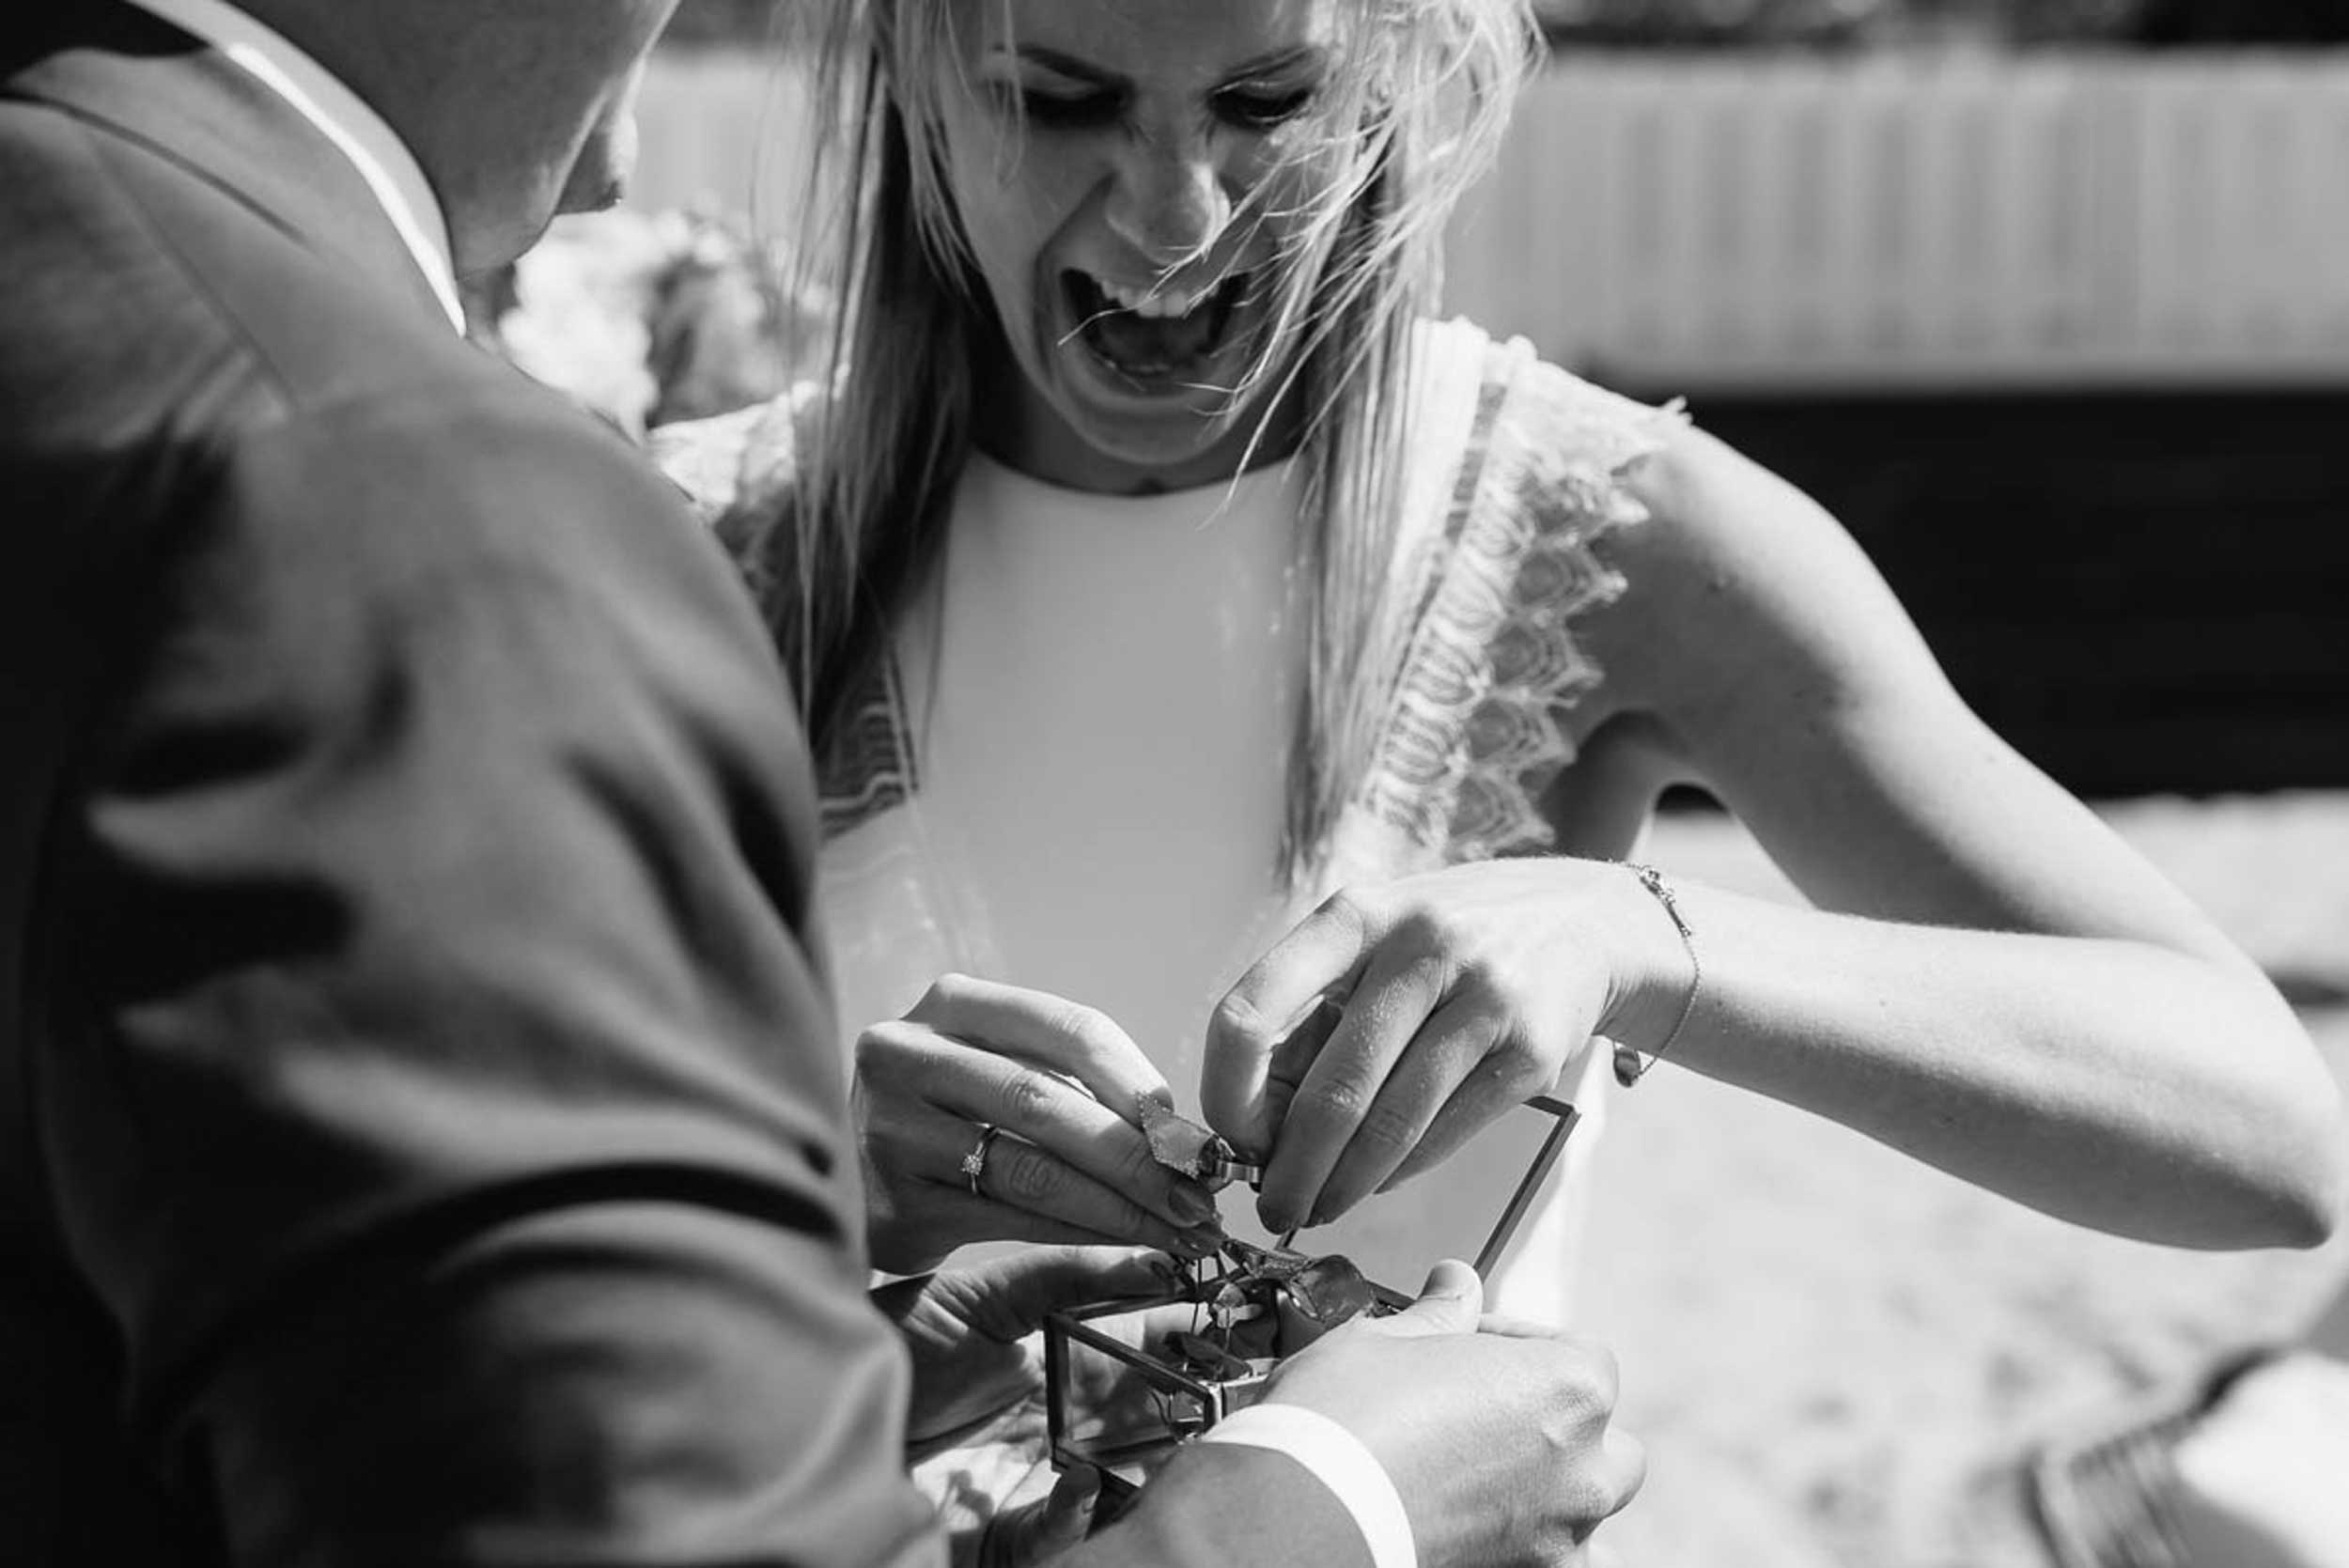 Zwart-wit beeld van de bruid die met expressie de ringen losmaakt uit een juwelendoosje.